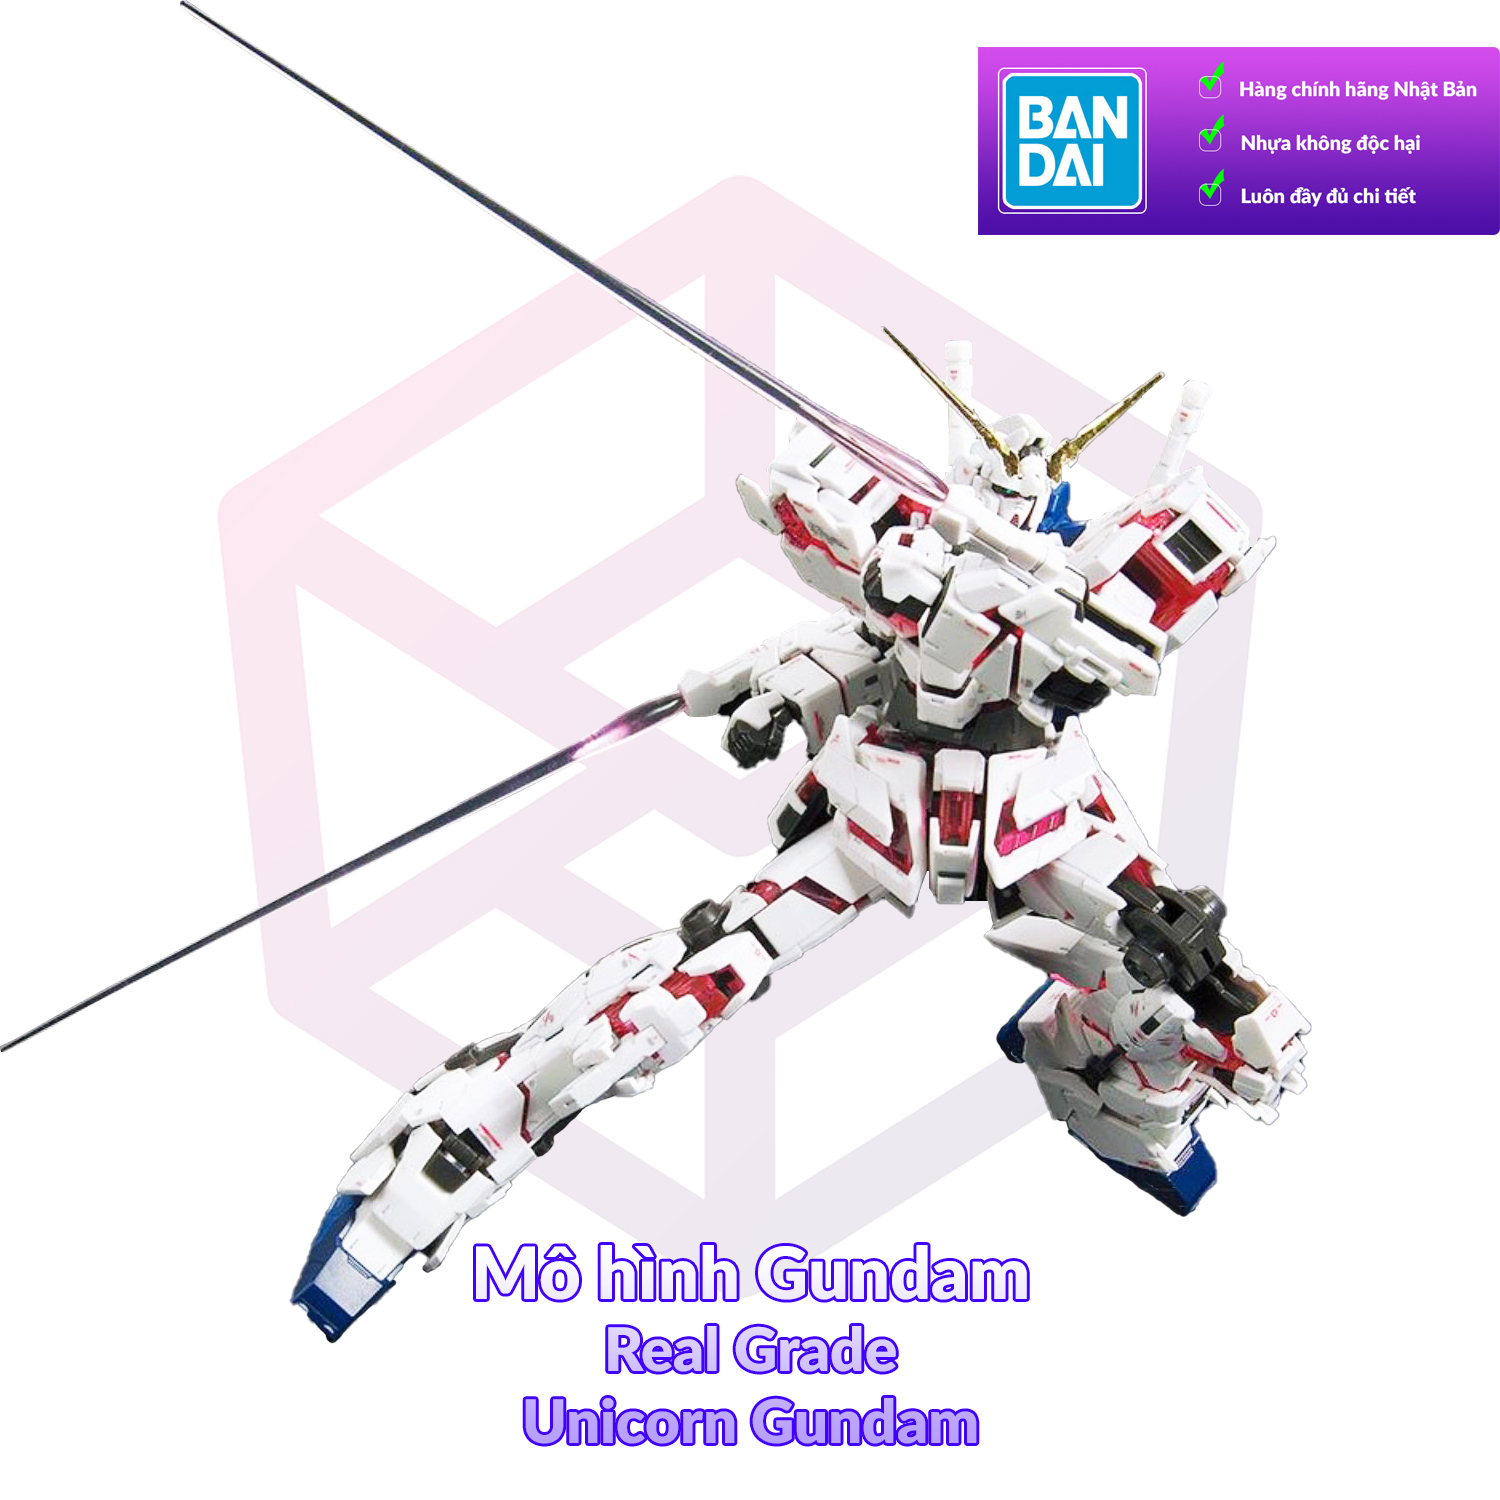 7-11 12 VOUCHER 8%Mô Hình Gundam Bandai RG 25 Unicorn Gundam 1 144 MS